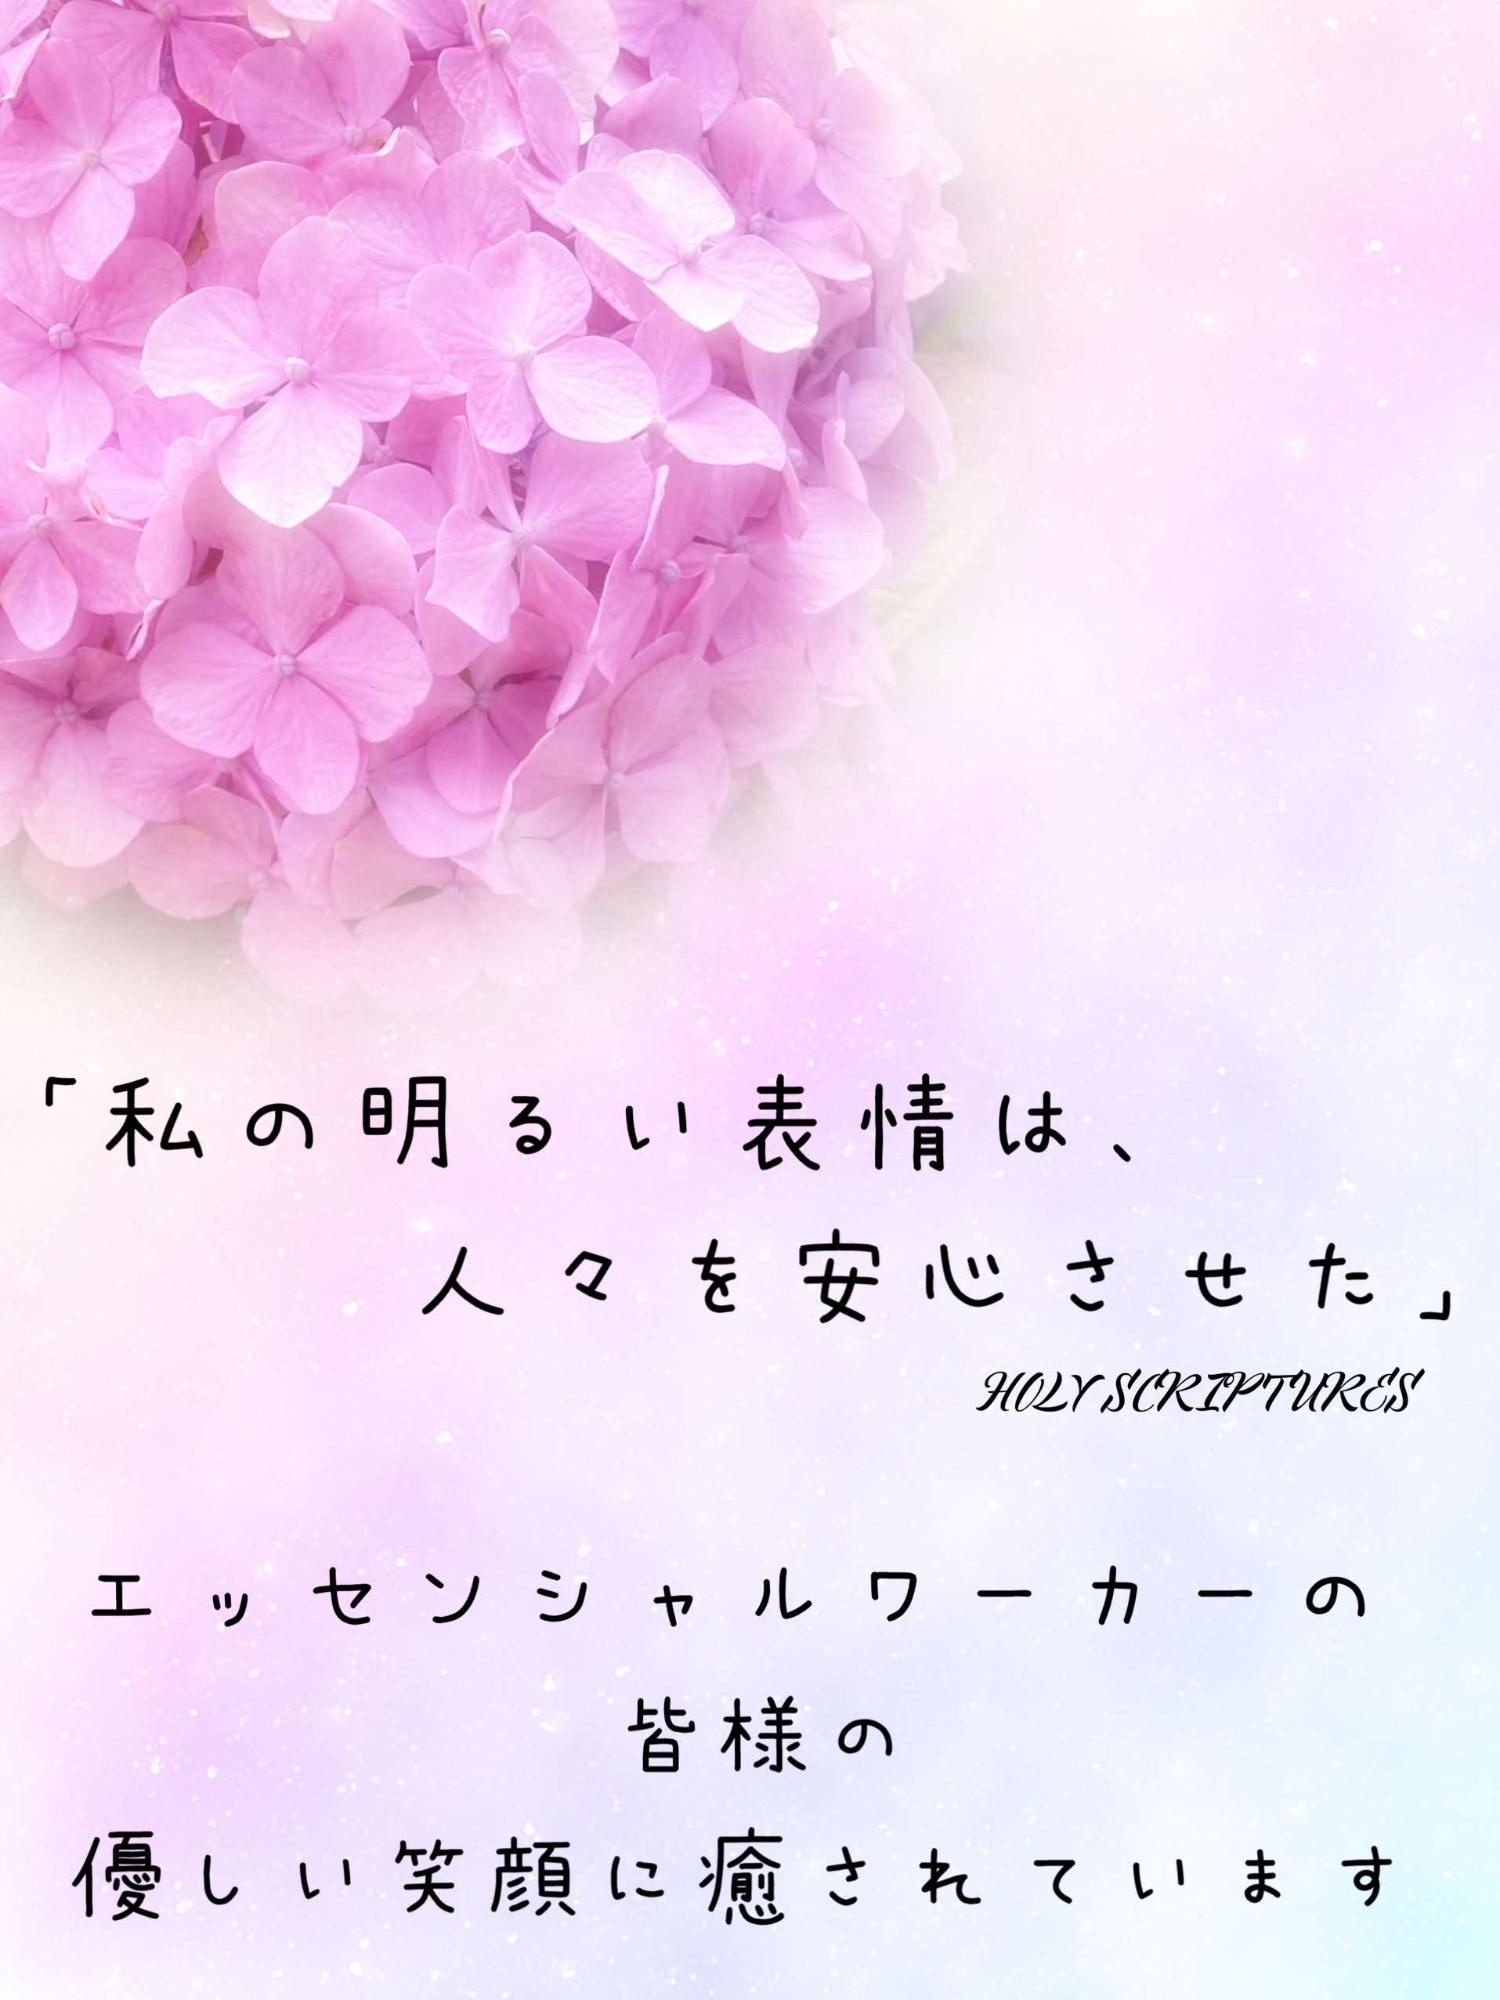 「私の明るい表情は、人々を安心させた」エッセンシャルワーカーの皆様の優し笑顔に癒されています(mizuiroさんからのメッセージ)とピンク色の紫陽花の花の写真